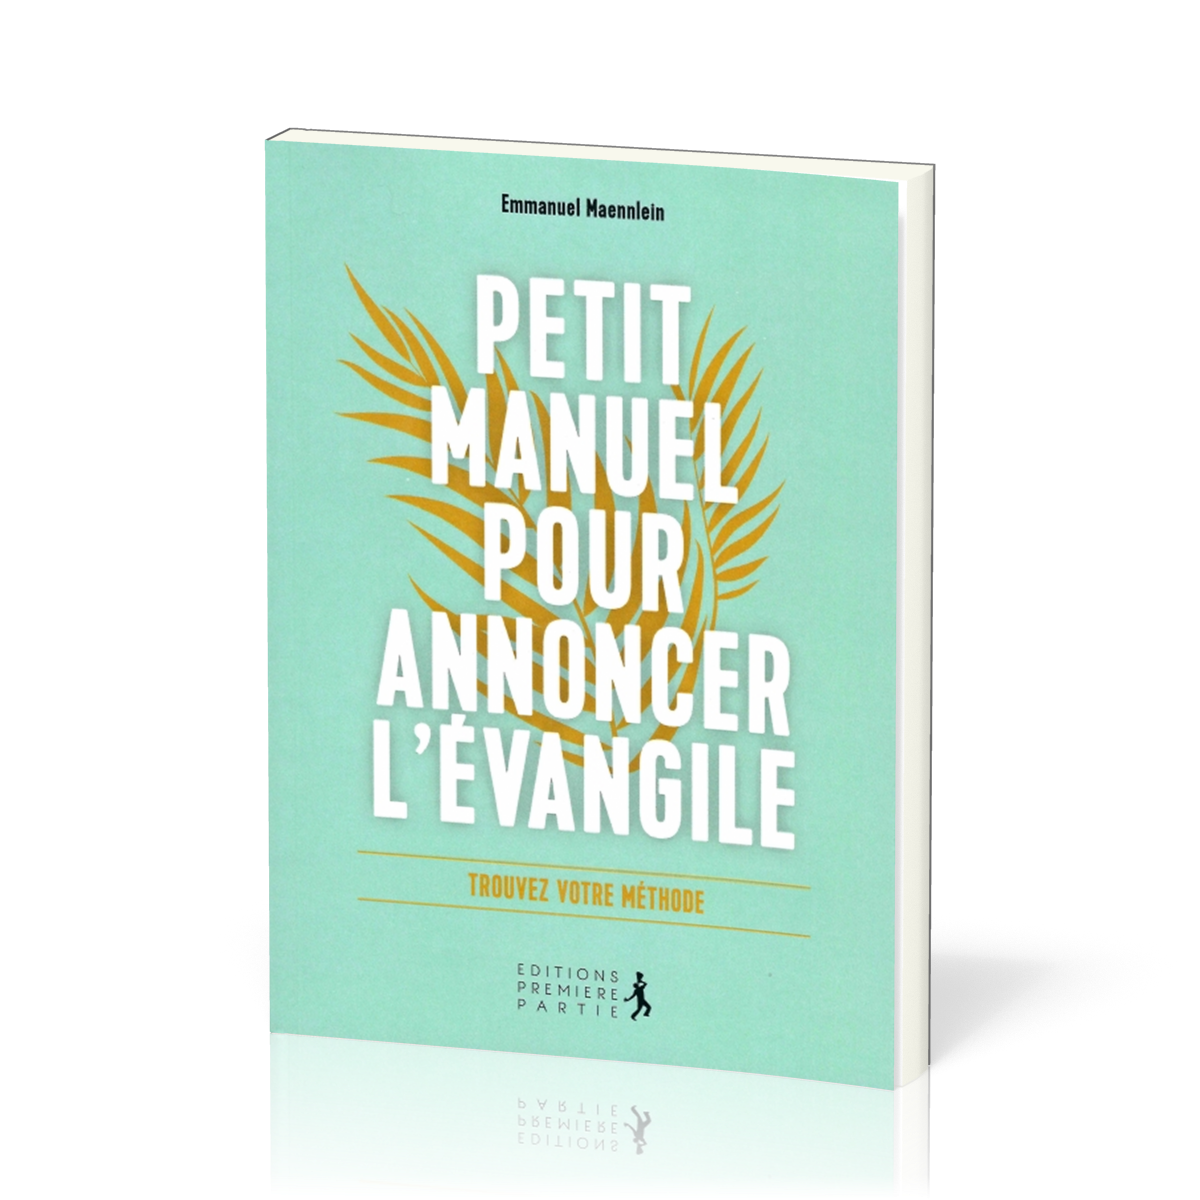 PETIT MANUEL POUR ANNONCER L'EVANGILE